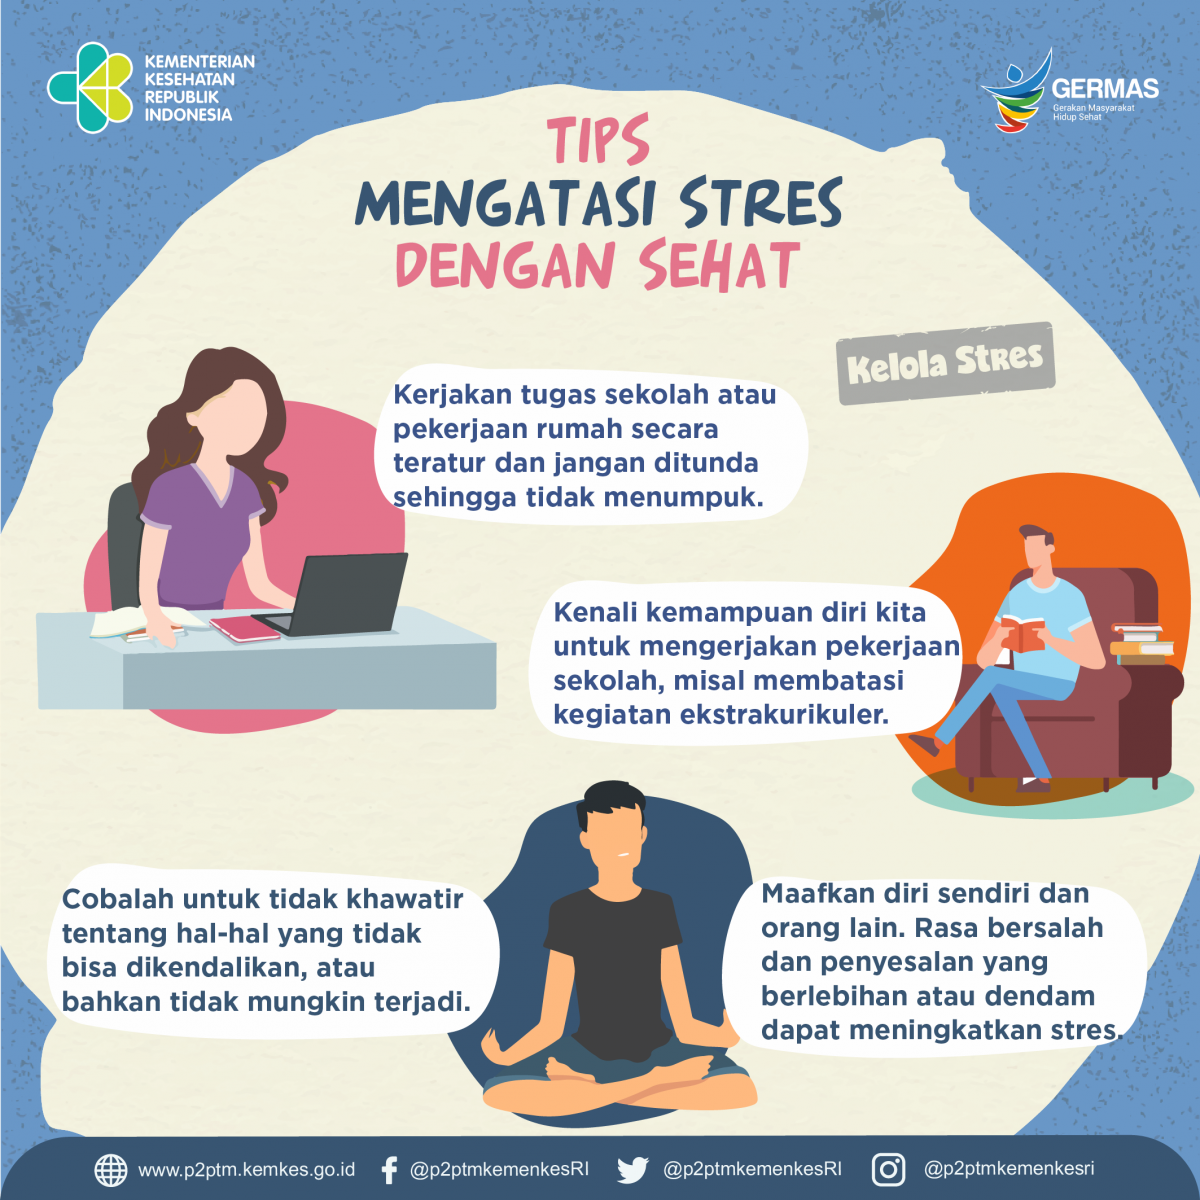 Tips mengatasi Stres dengan sehat.